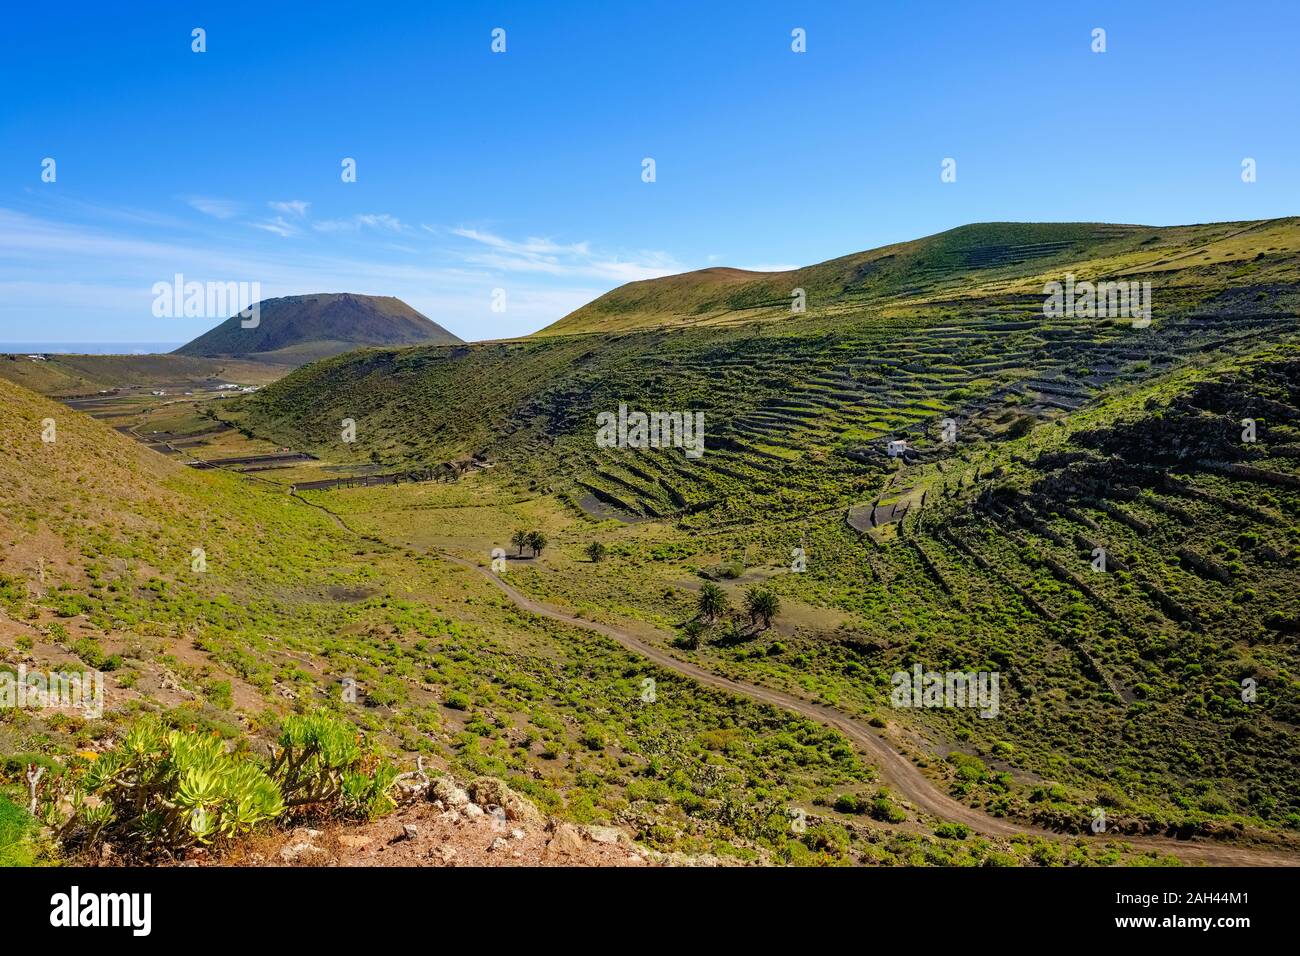 España, Islas Canarias, Guinate, camino de tierra en valle verde con campos de terrazas Foto de stock